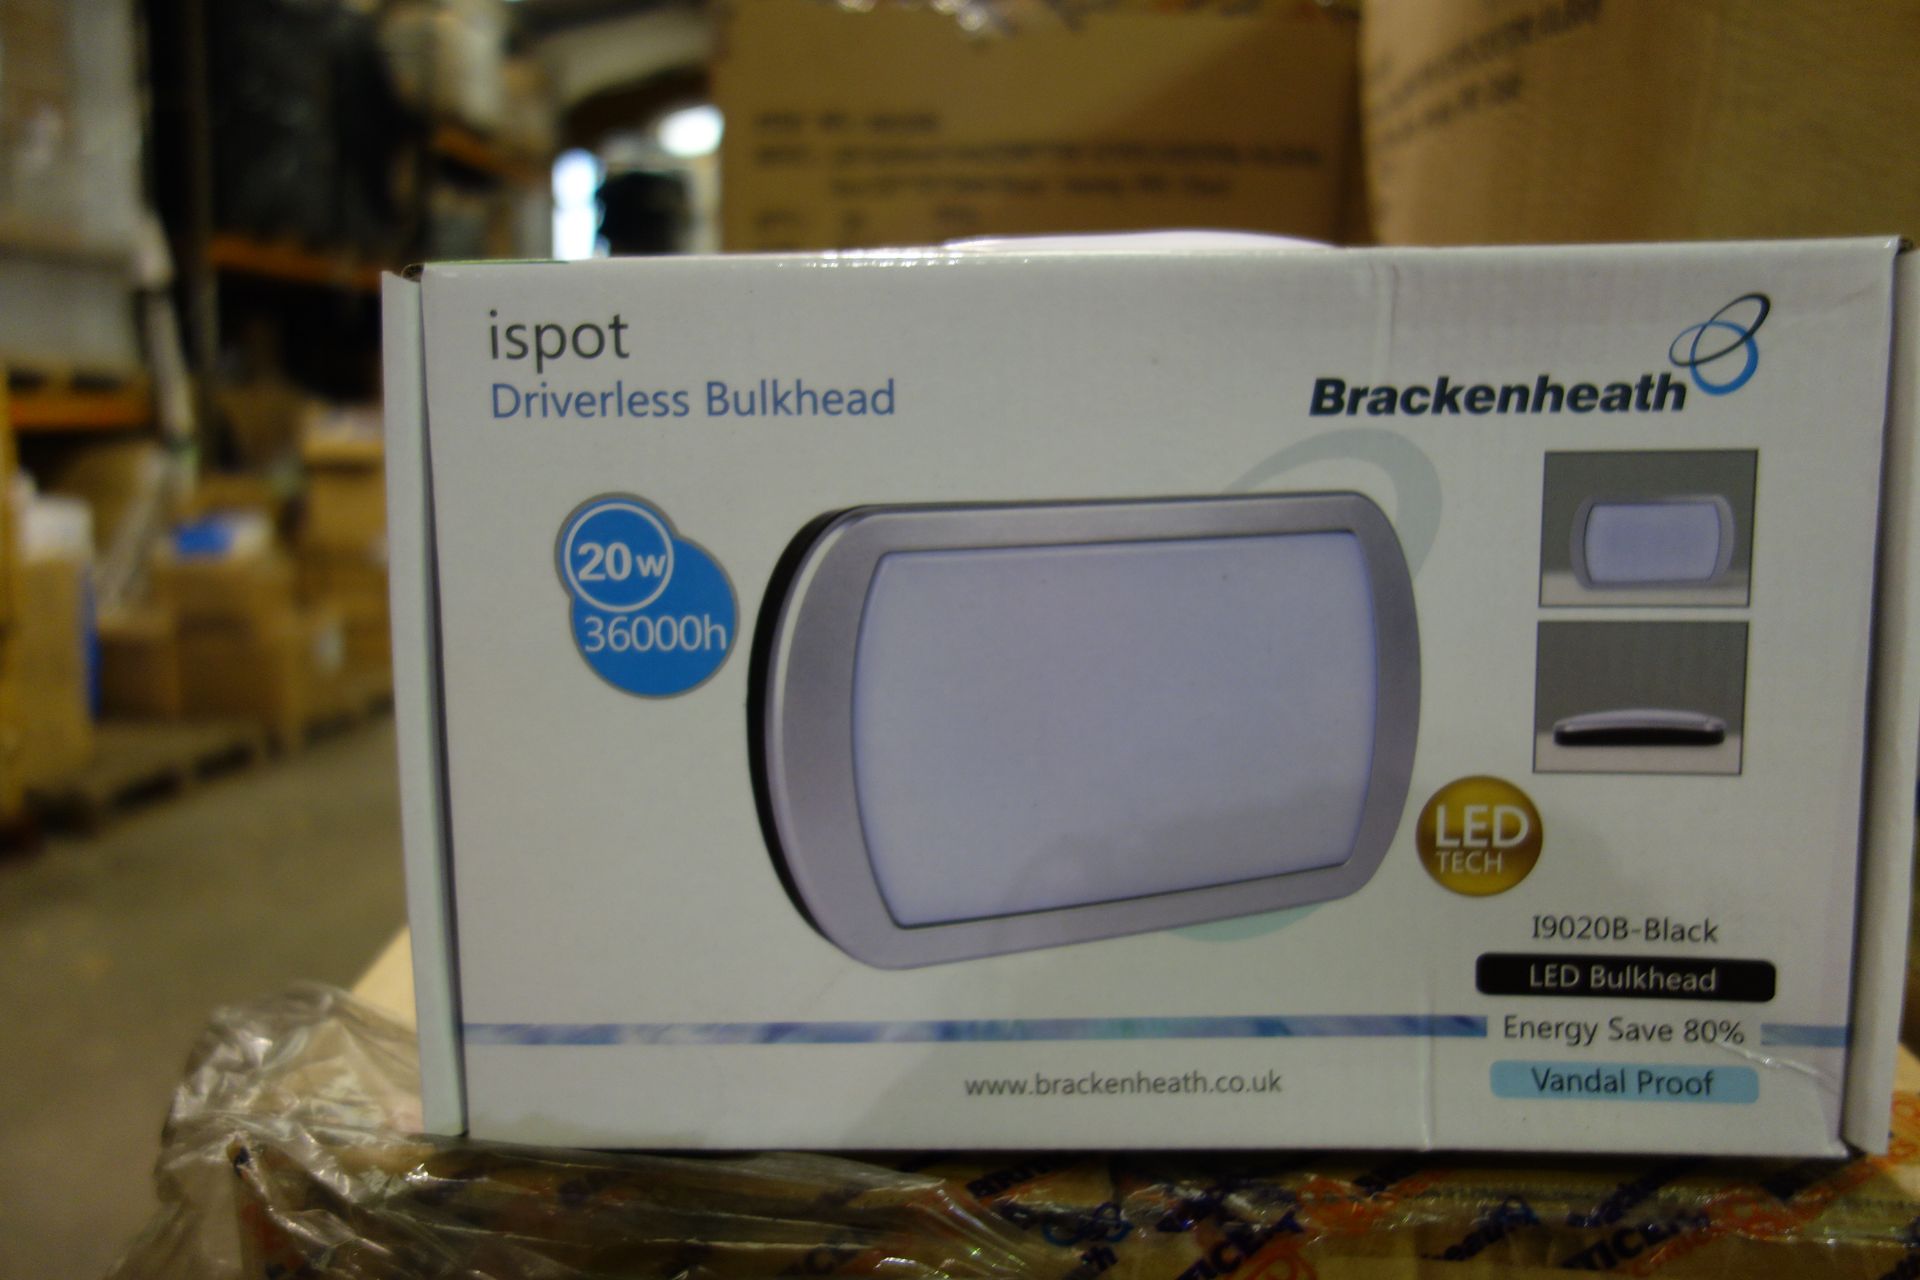 10 X Brakenheath I9020B-Black LED Bulkhead Vandal Proof